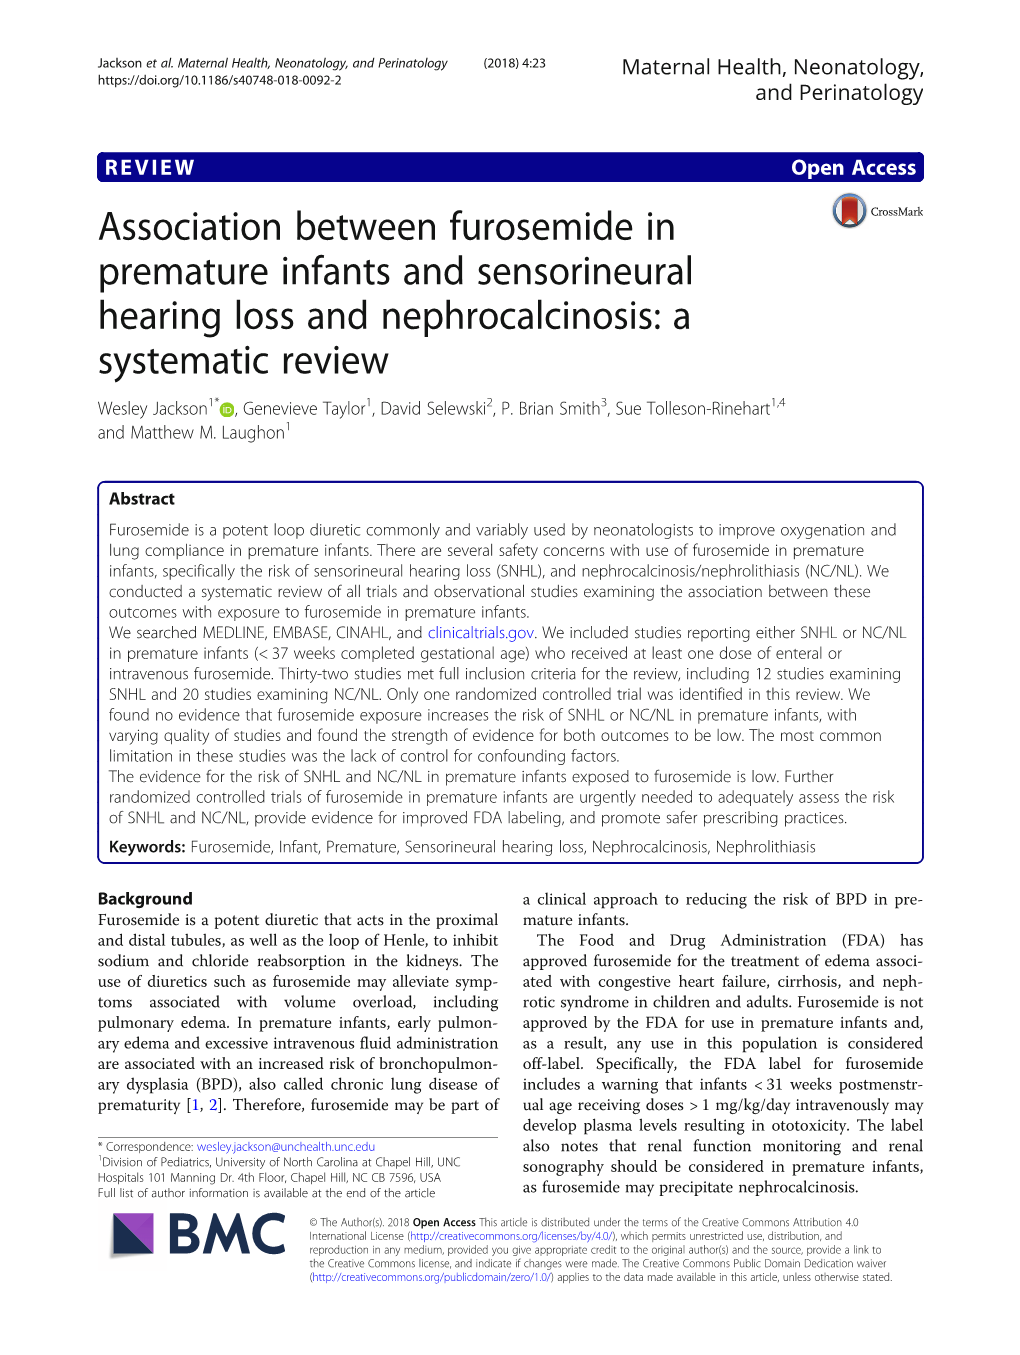 Association Between Furosemide in Premature Infants And